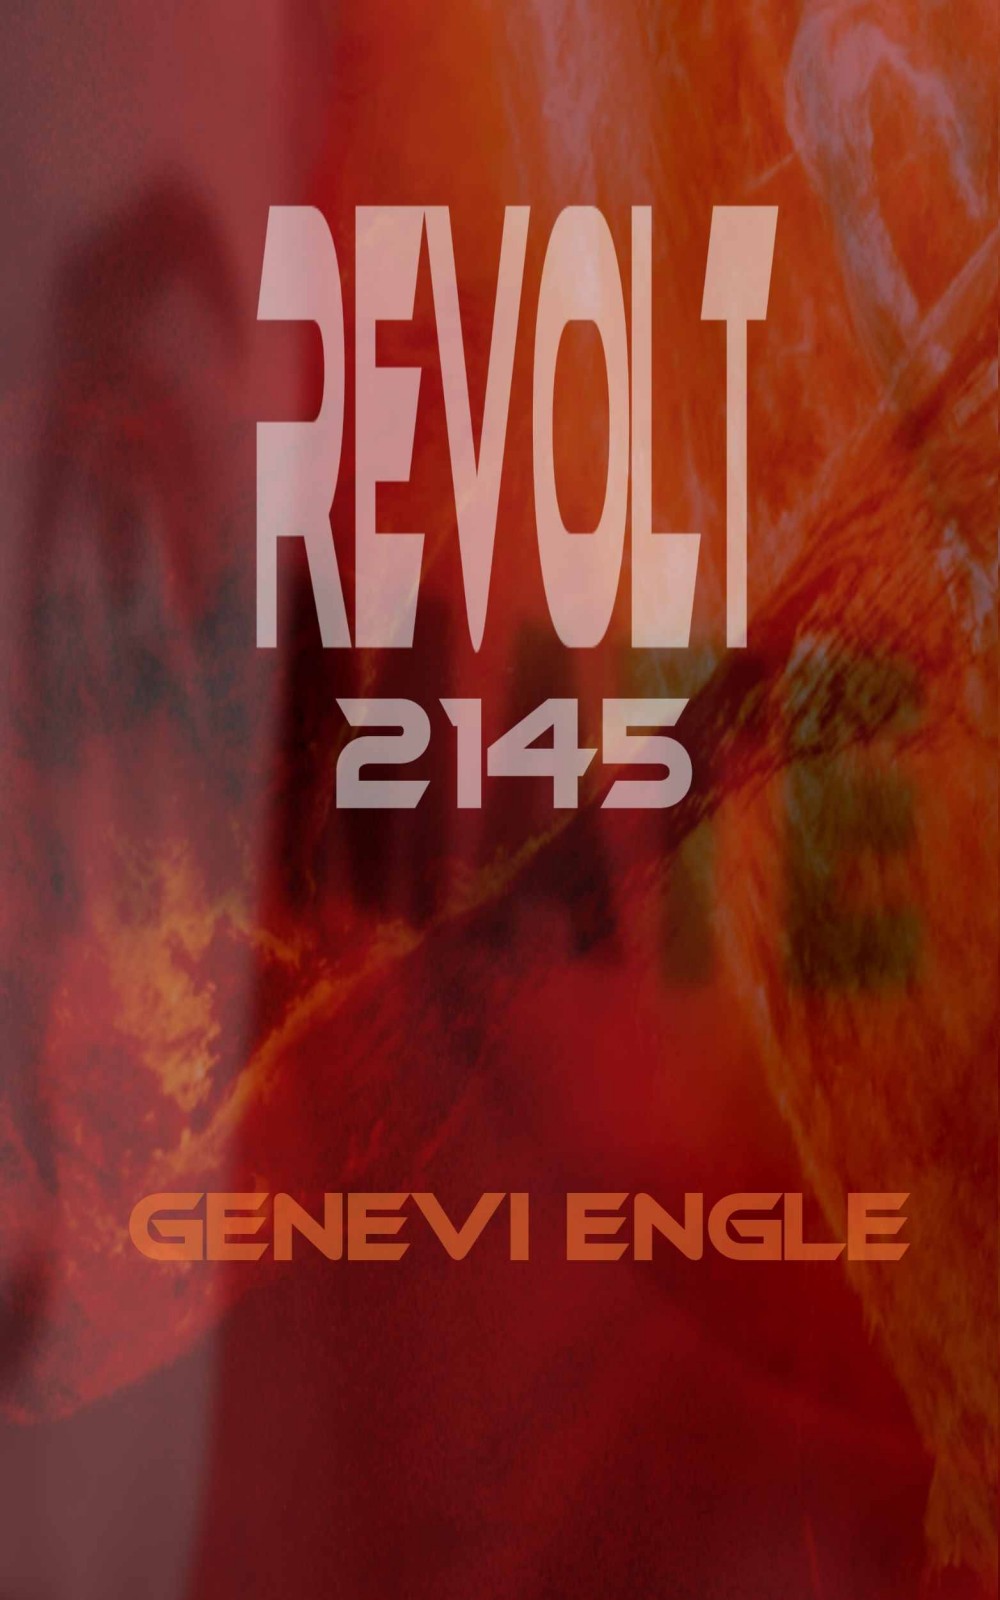 Revolt 2145